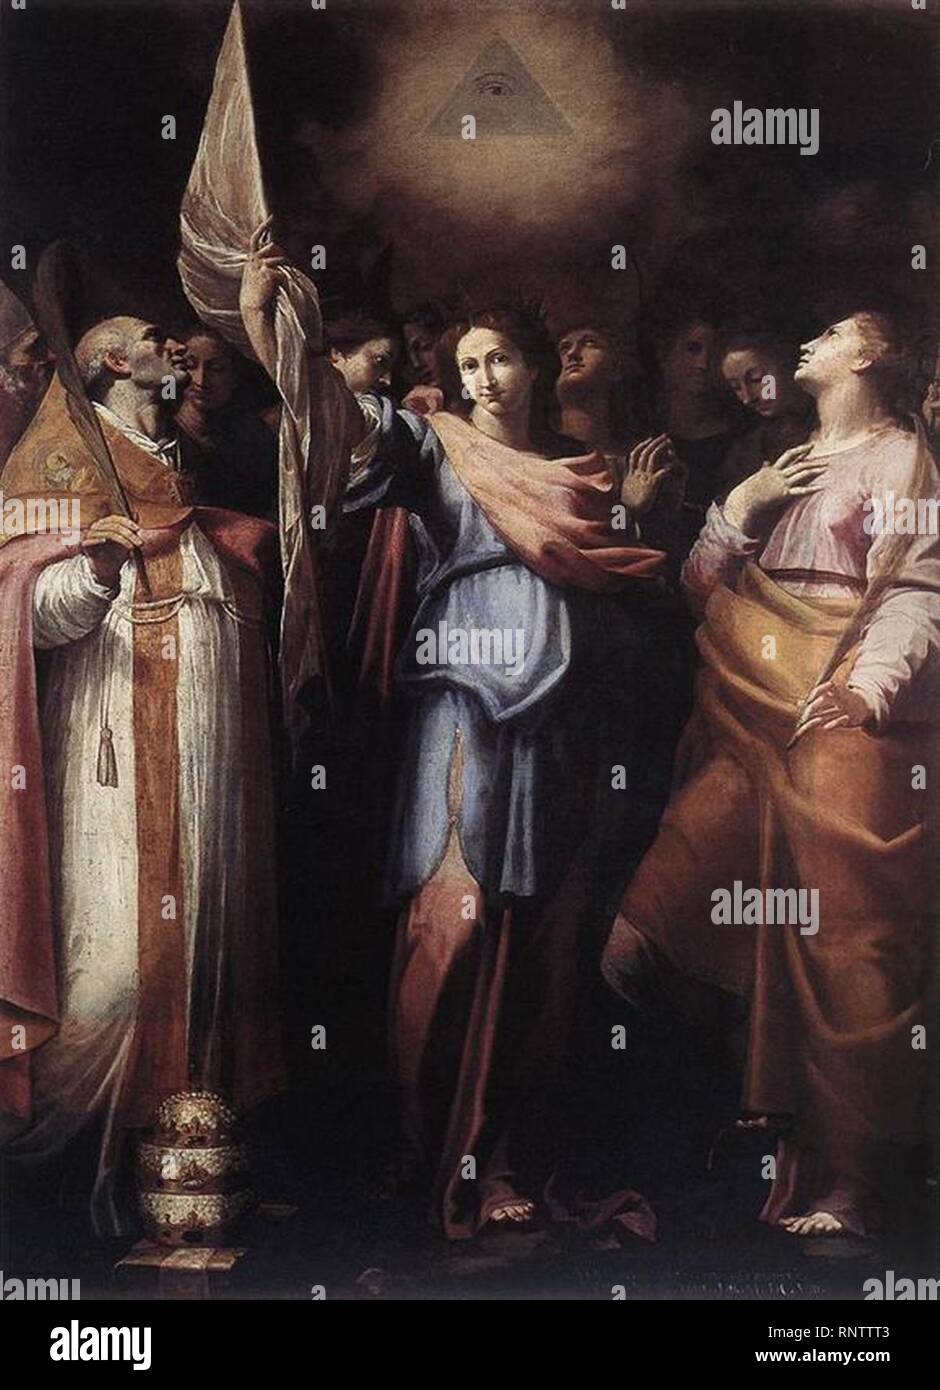 Cavarozzi Santa Ursula y sus compañeras con el papa Ciríaco y Santa Catalina de Alejandría 1608. Óleo sobre lienzo. 280 x 220 cm. Basilica di San Marco, Rome. Stock Photo